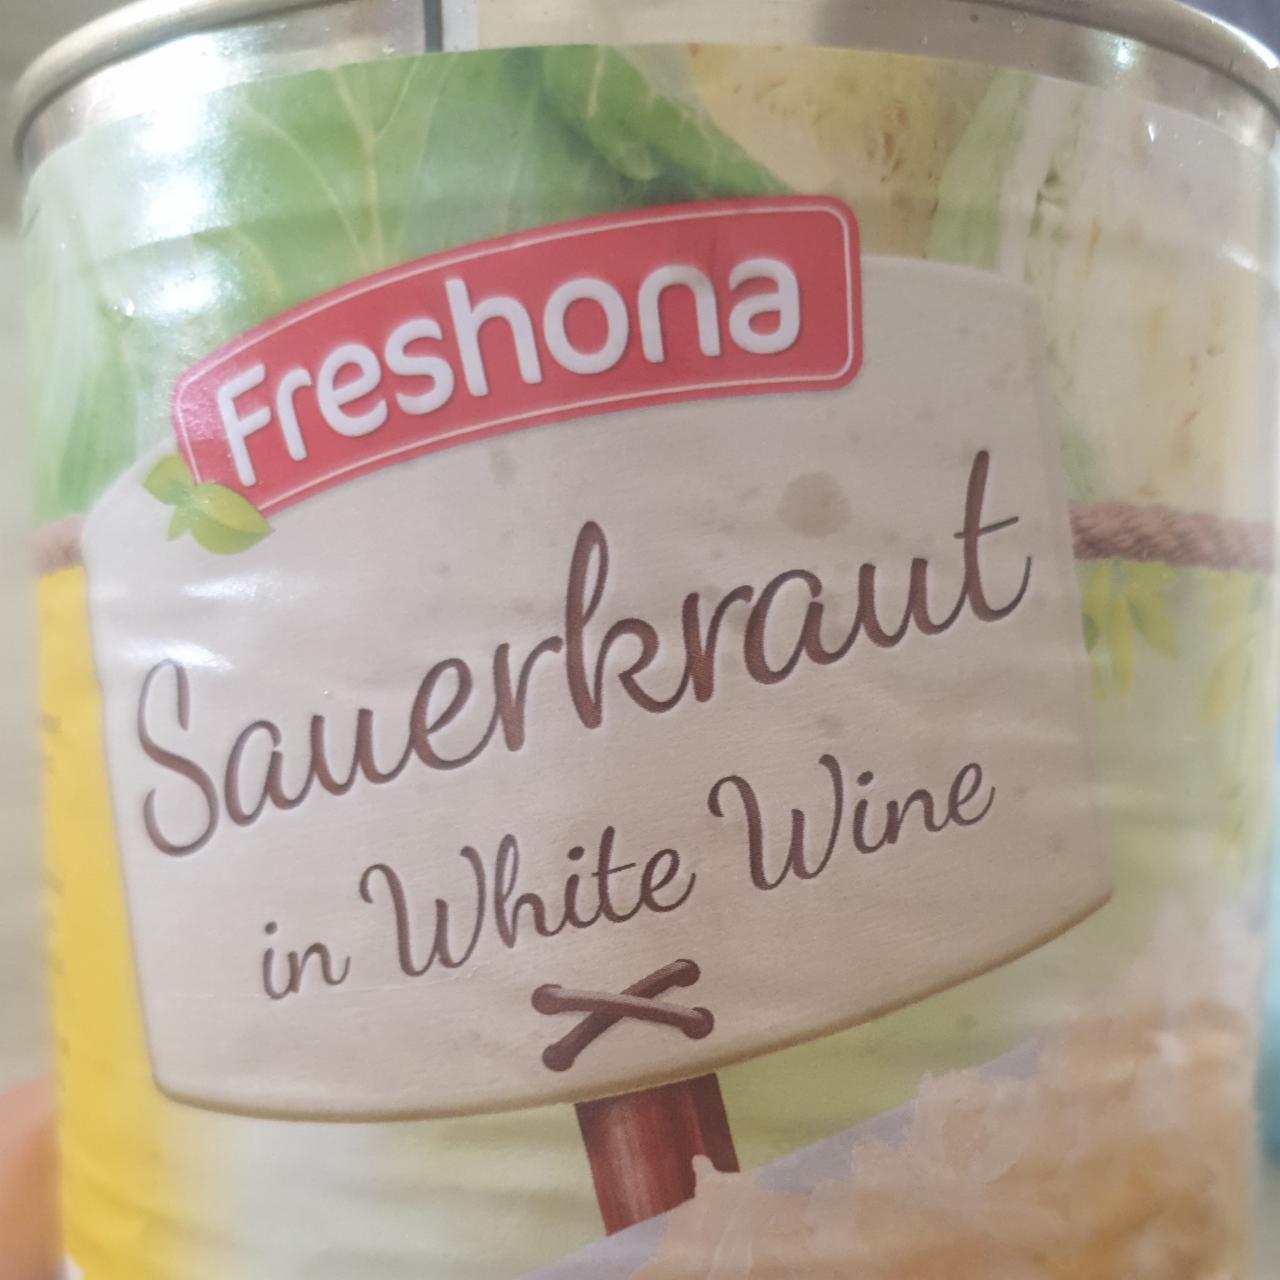 Fotografie - Sauerkraut in White Wine Freshona